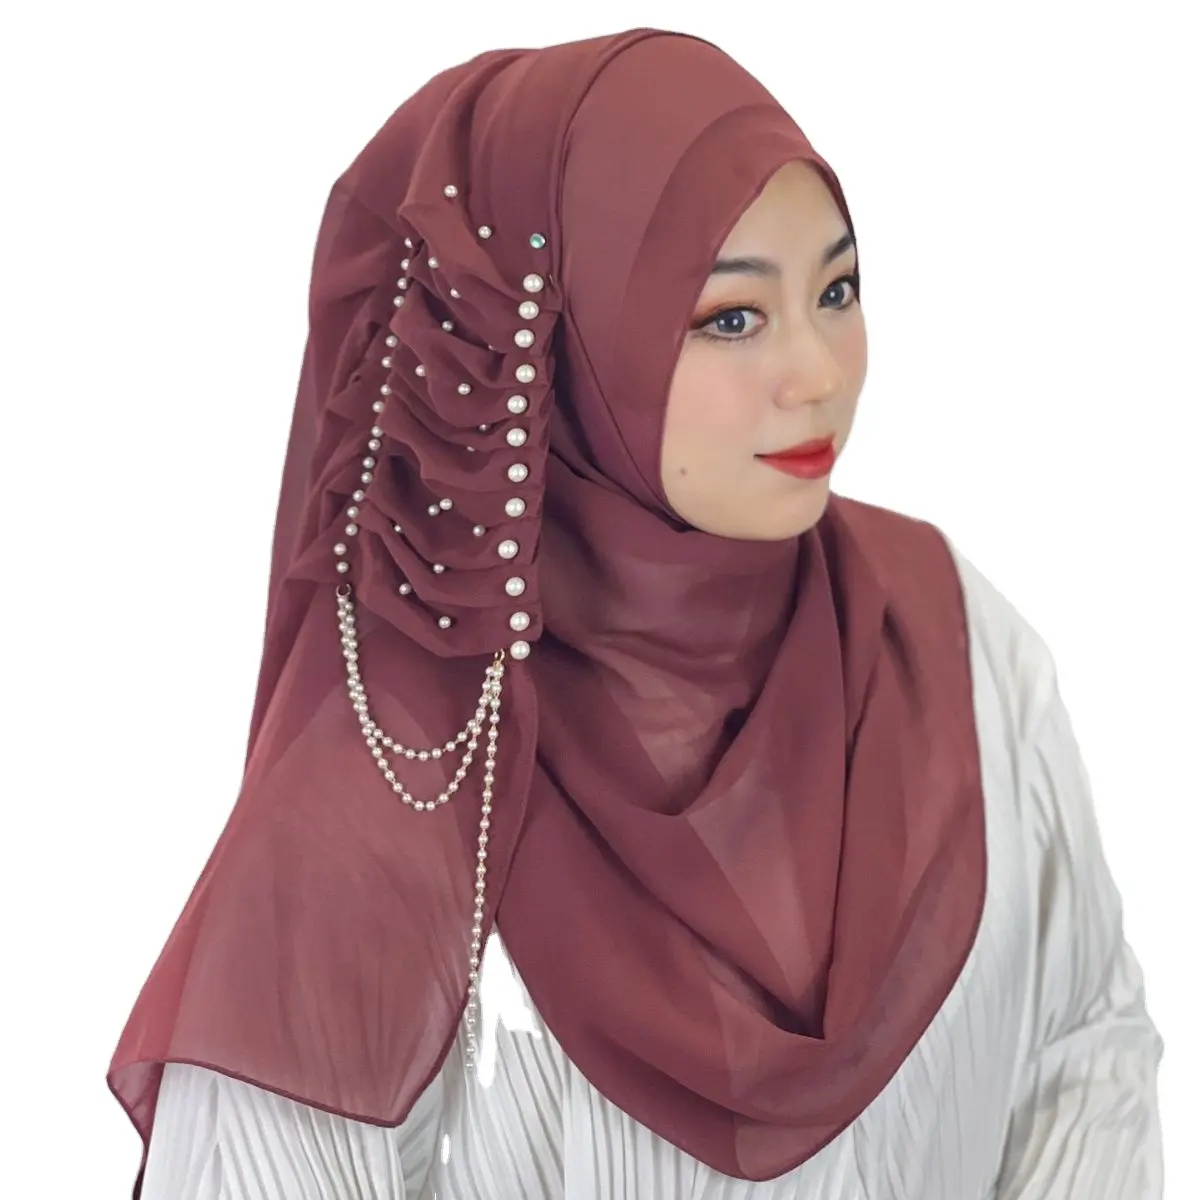 เสื้อคลุมผ้าชิฟฟอนผ้าเจอร์ซี่ดีไซน์ใหม่สำหรับสตรีมุสลิมฮิญาบทรงสี่เหลี่ยมผ้าพันคอมุสลิม